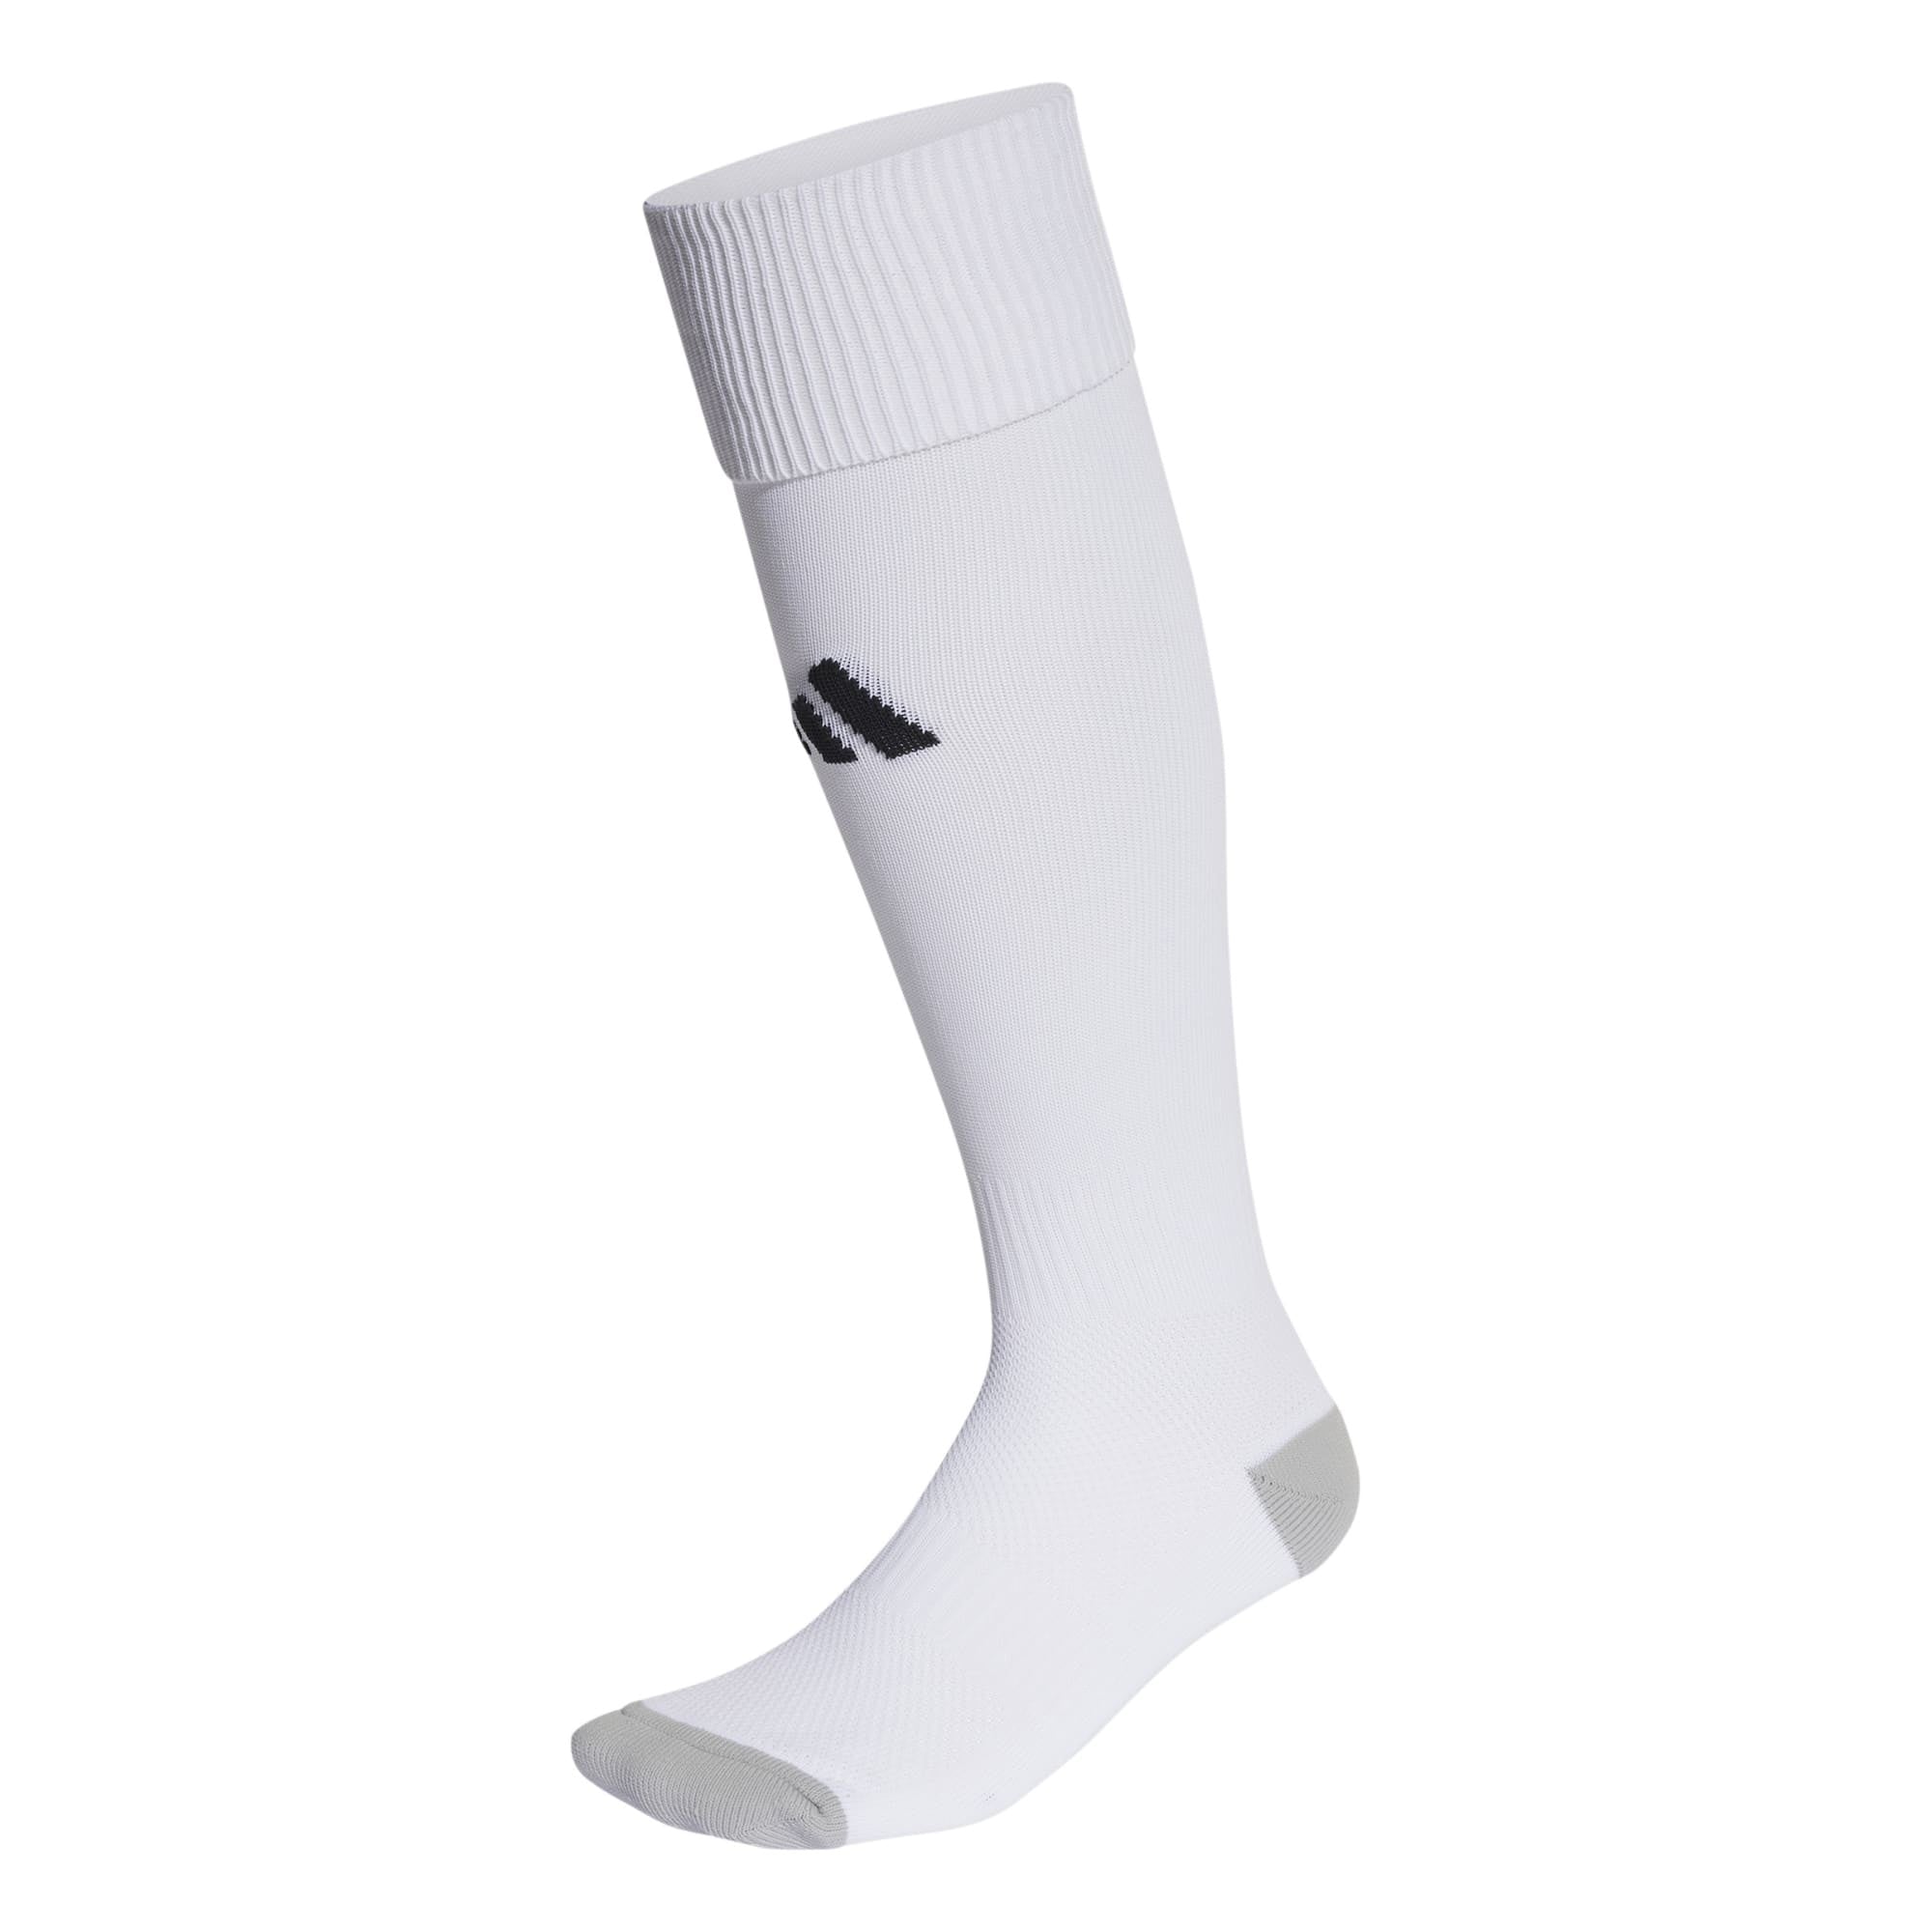 Adidas Milano 23 Socks (White) - IB7813